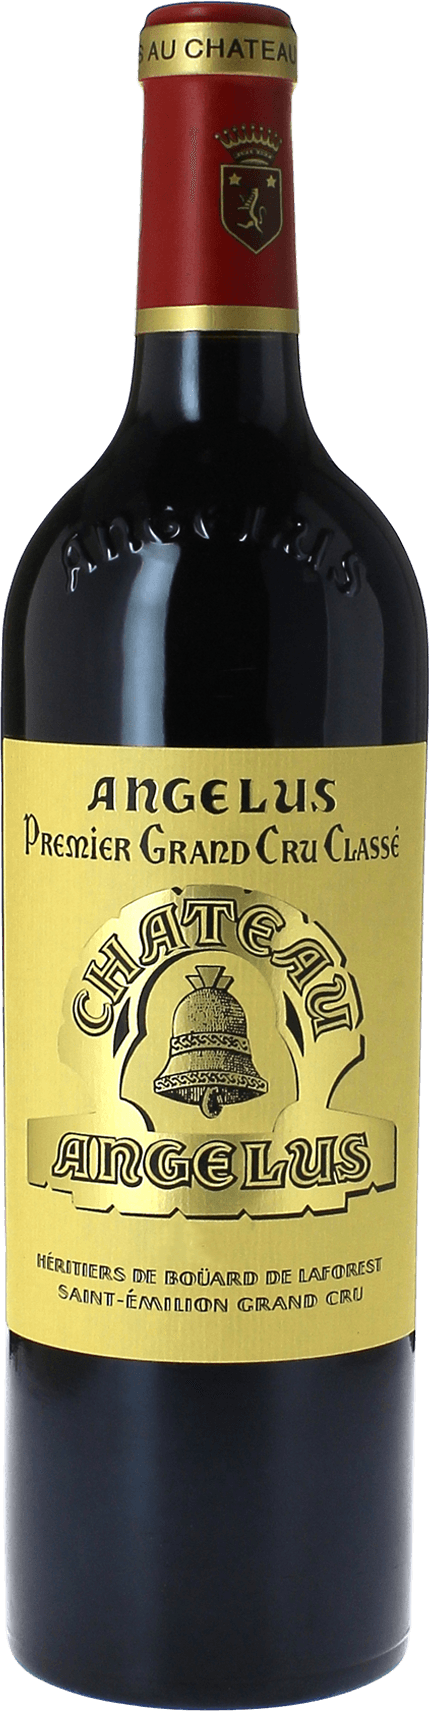 Angelus 1994 1er Grand cru class A Saint-Emilion, Bordeaux rouge